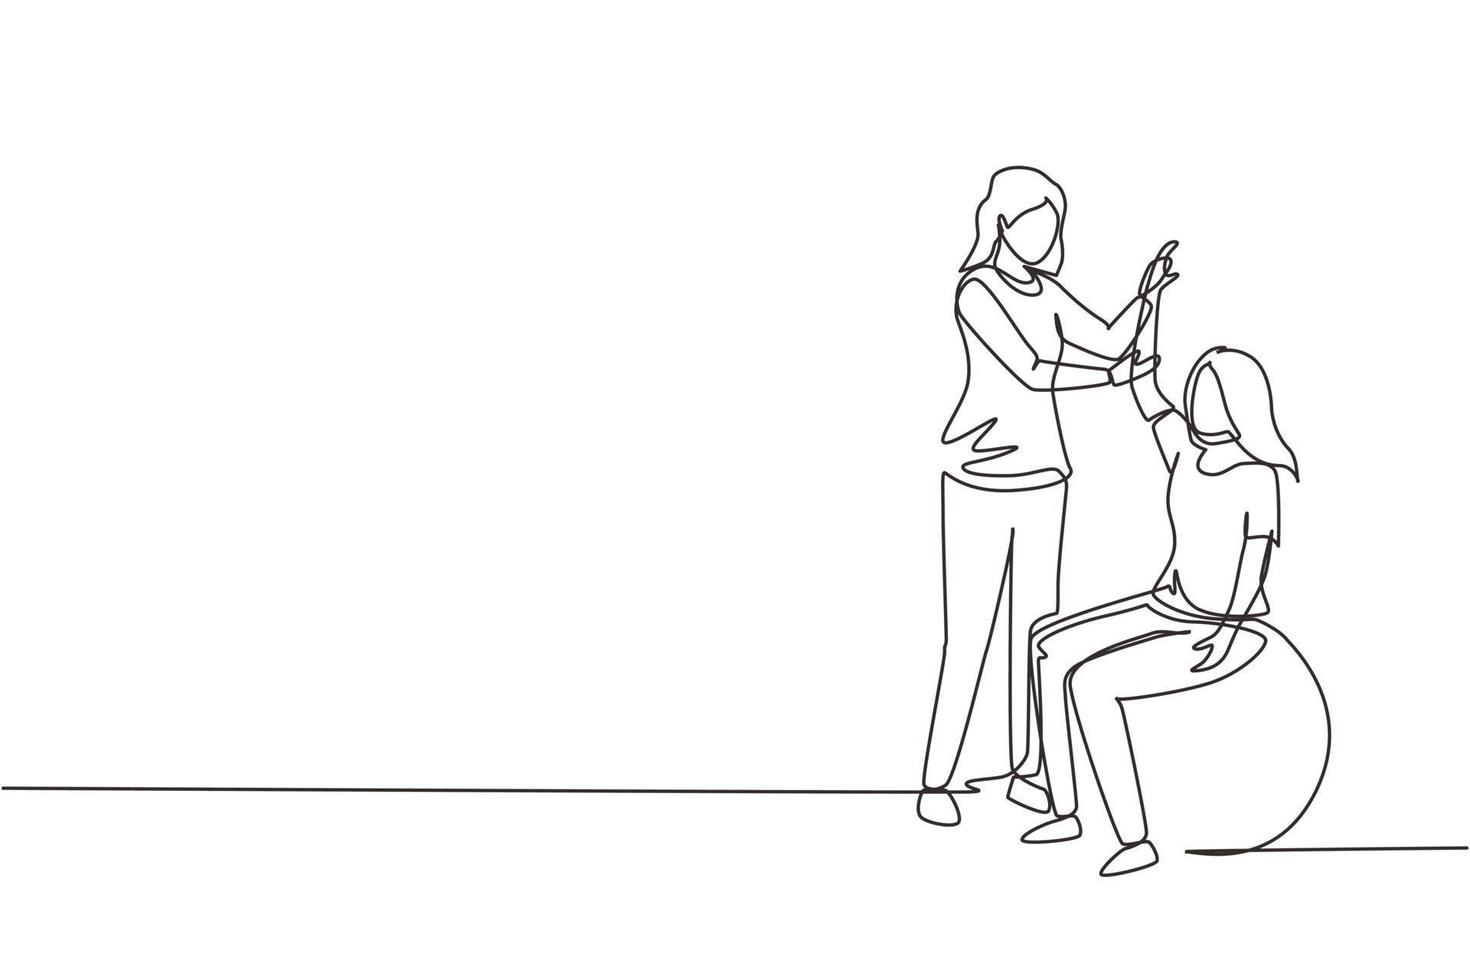 dibujo continuo de una línea composición isométrica de rehabilitación de fisioterapia con una paciente joven sentada en una pelota y una doctora sosteniendo su mano. ilustración de vector de diseño de dibujo de una sola línea